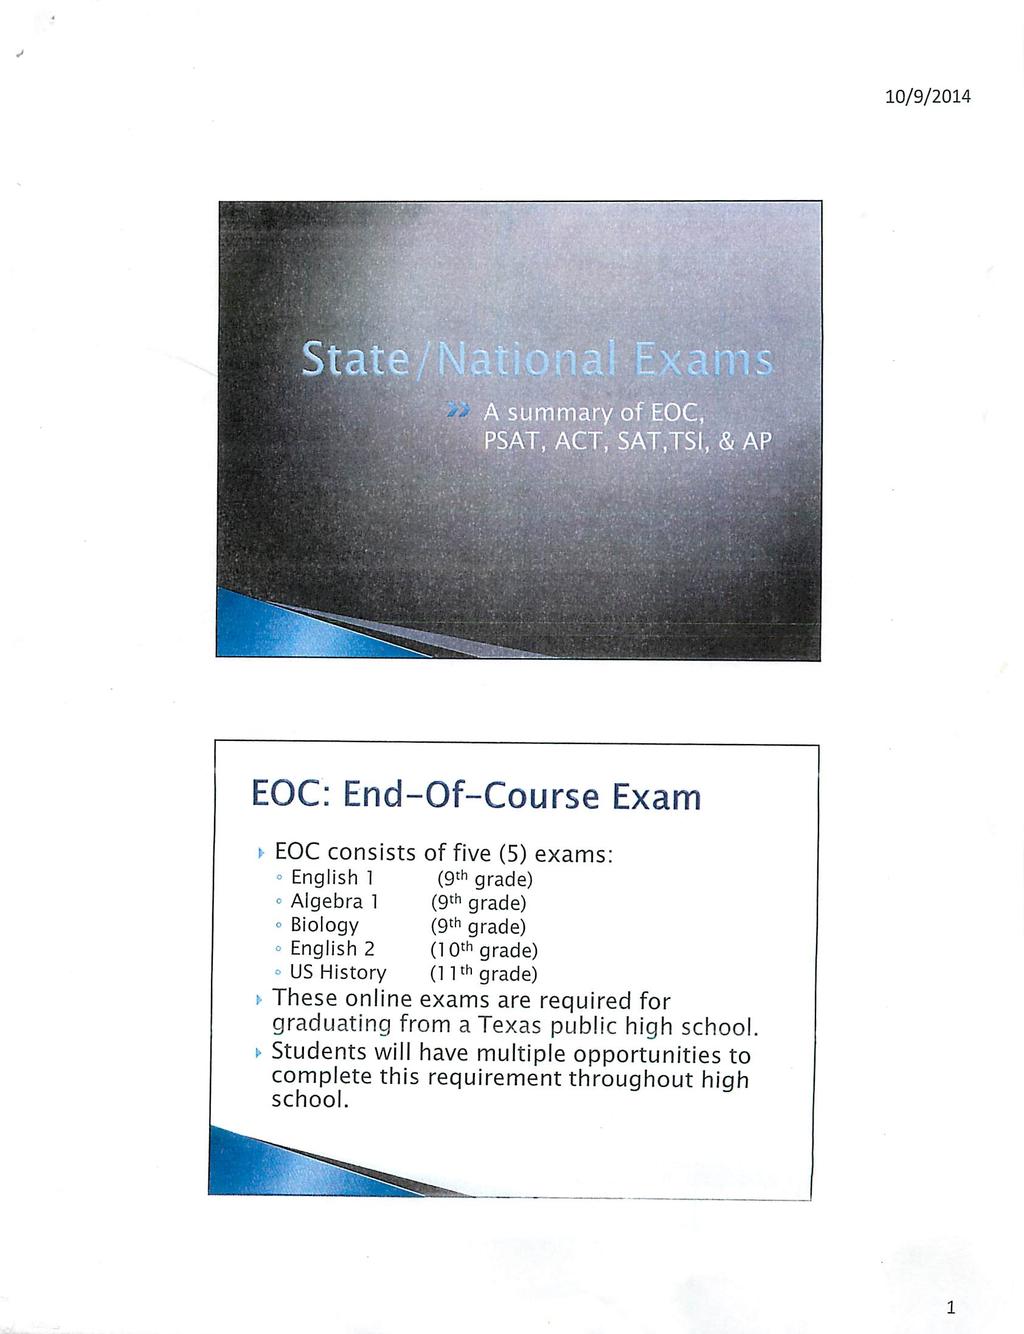 Stat A summary of EOC, PSAT, ACT, SAT.TSI.